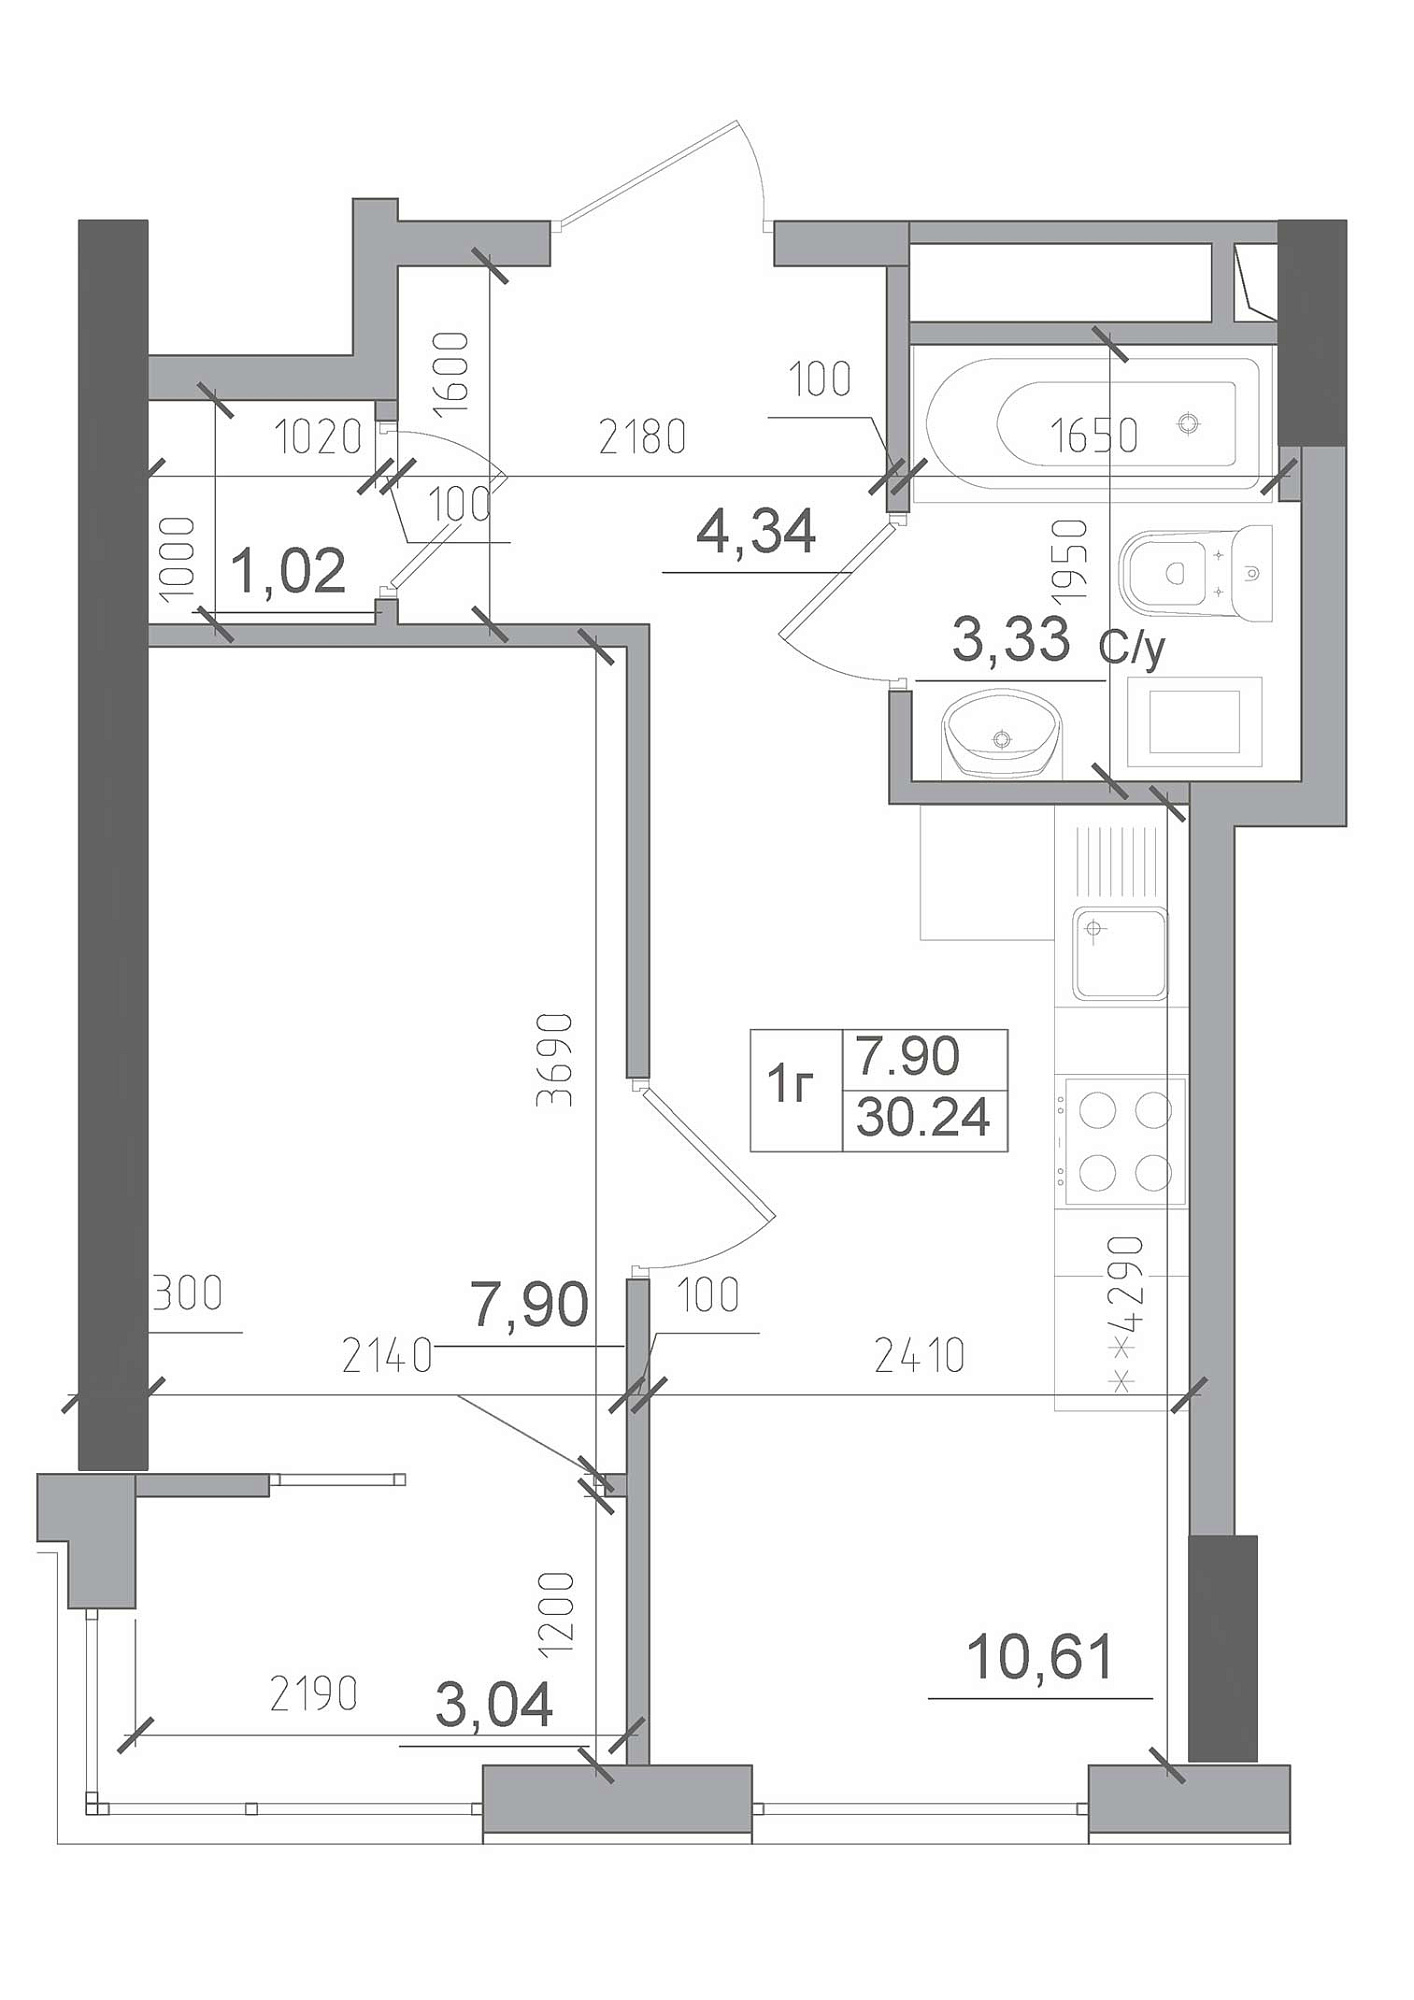 Планировка 1-к квартира площей 30.24м2, AB-22-03/00005.